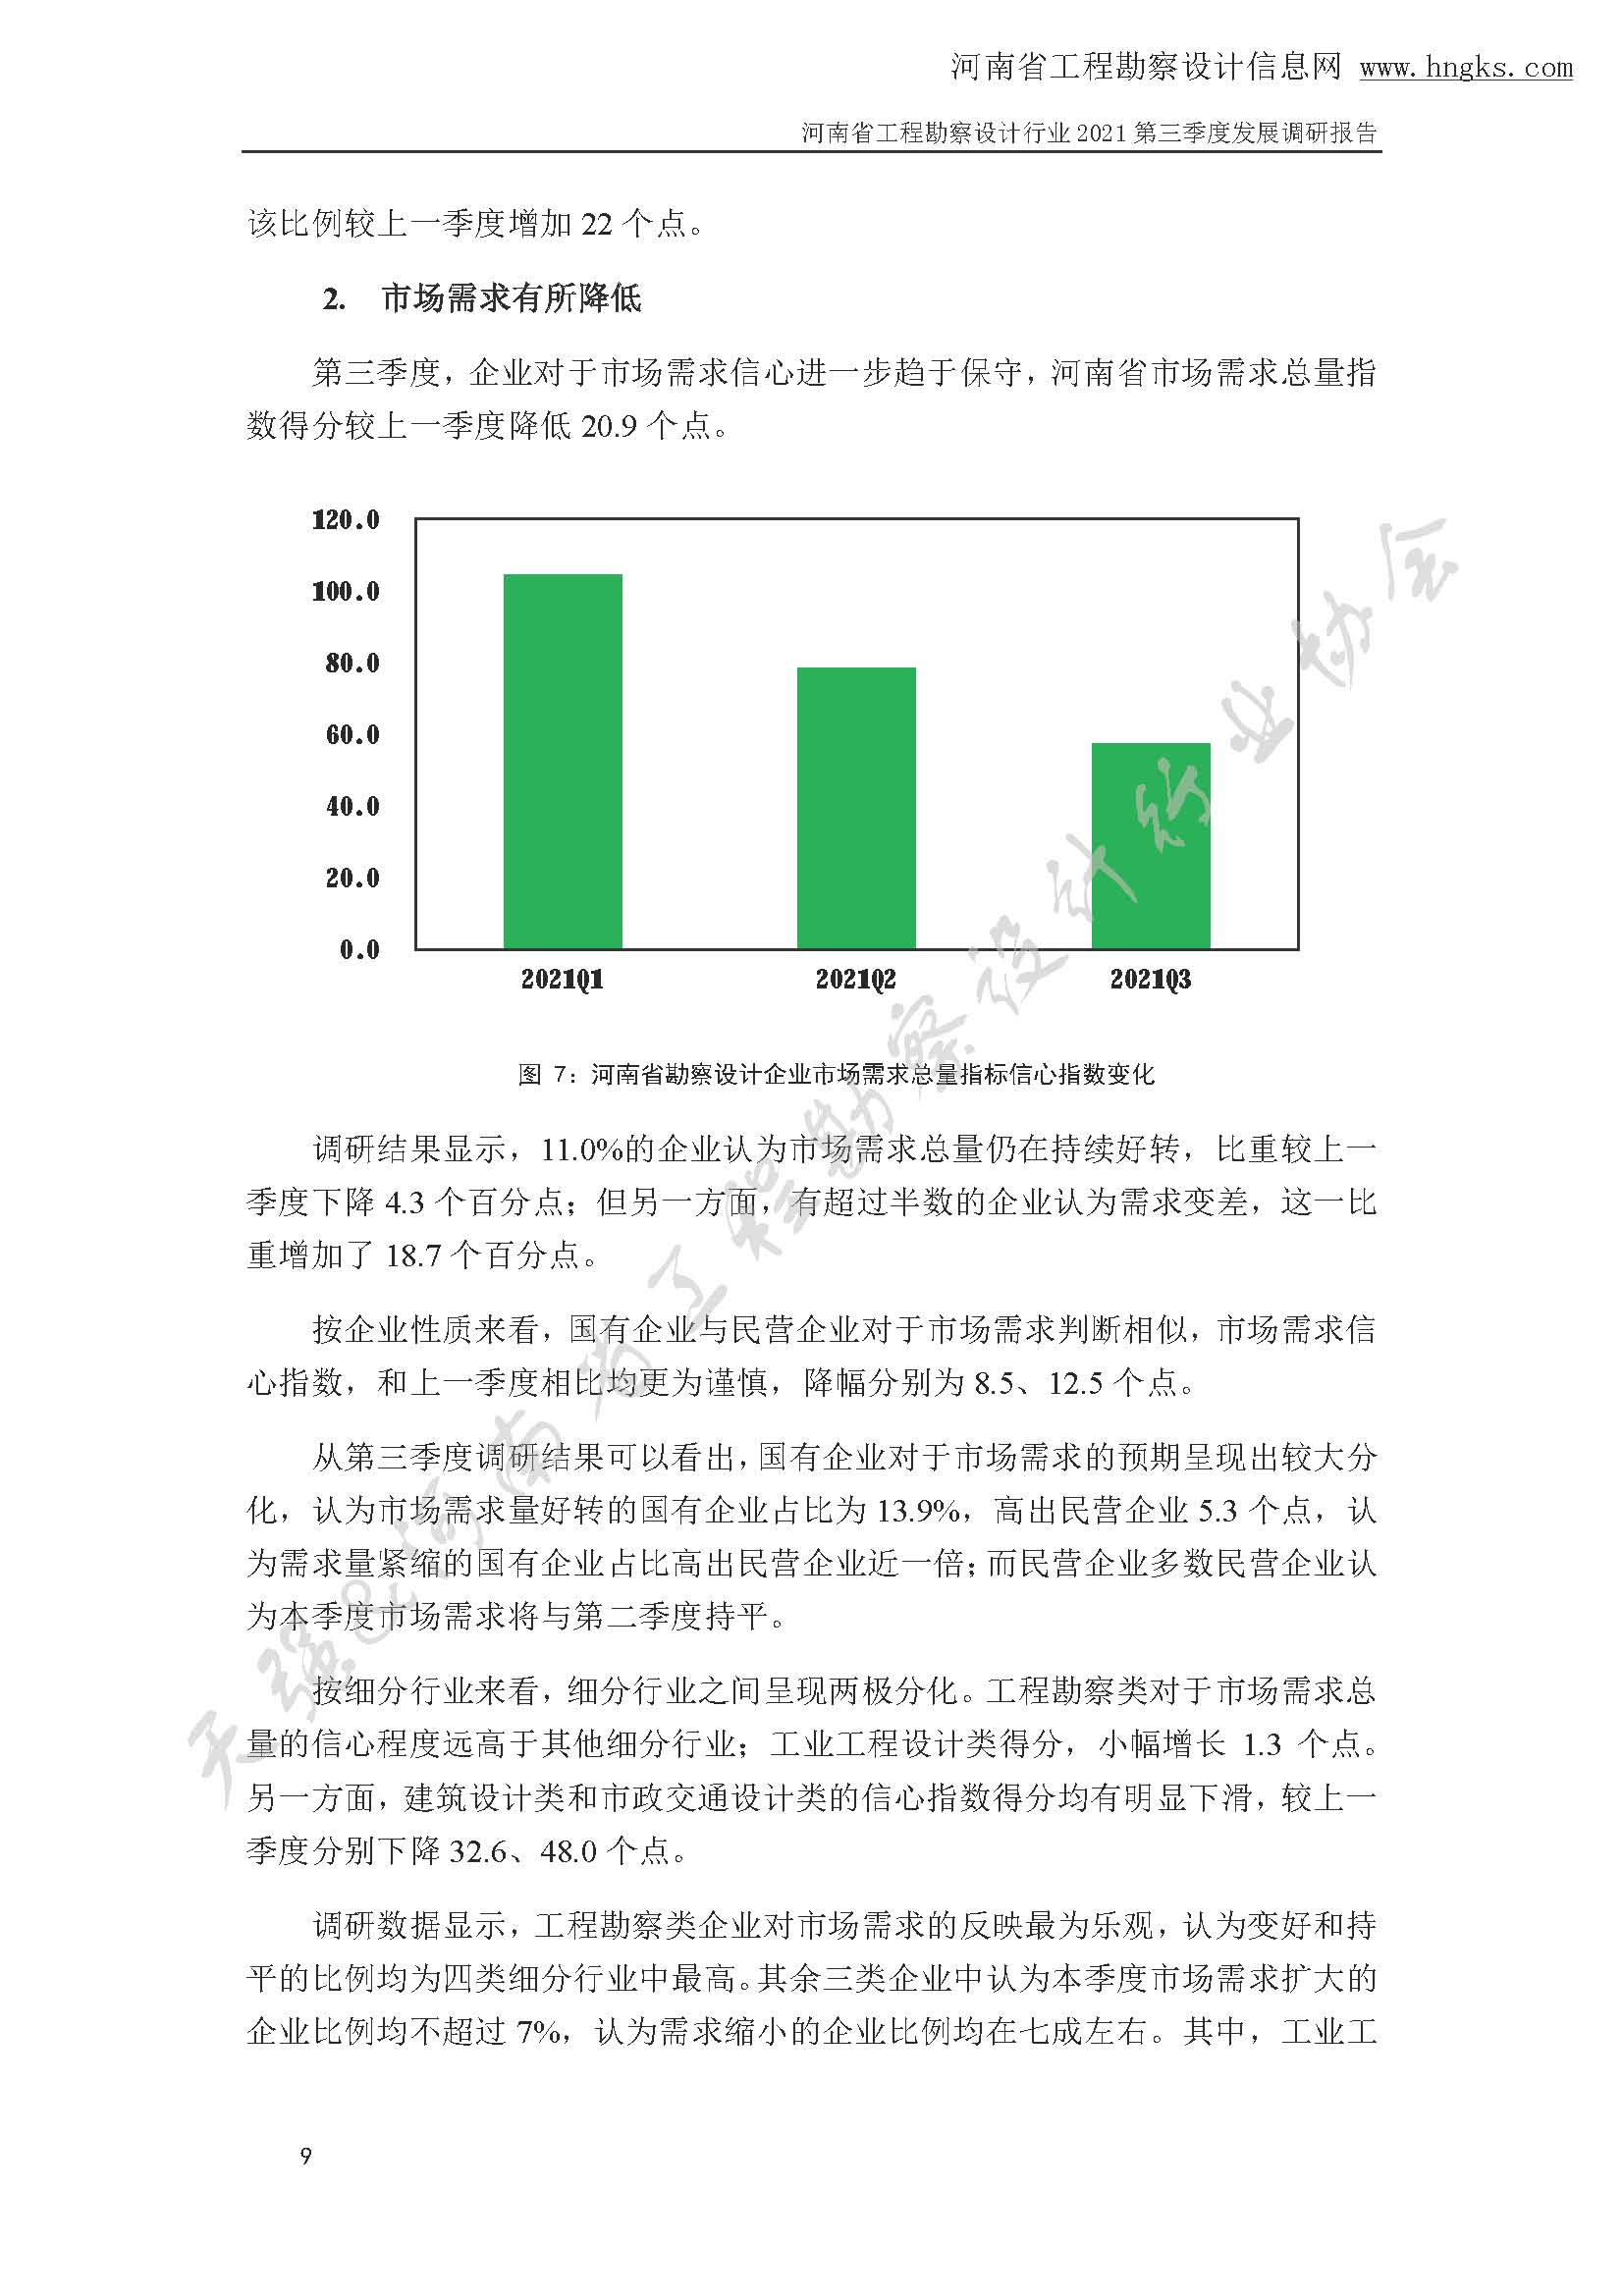 河南省工程勘察设计企业2021年第三季度发展调研报告-公开版_页面_12.jpg